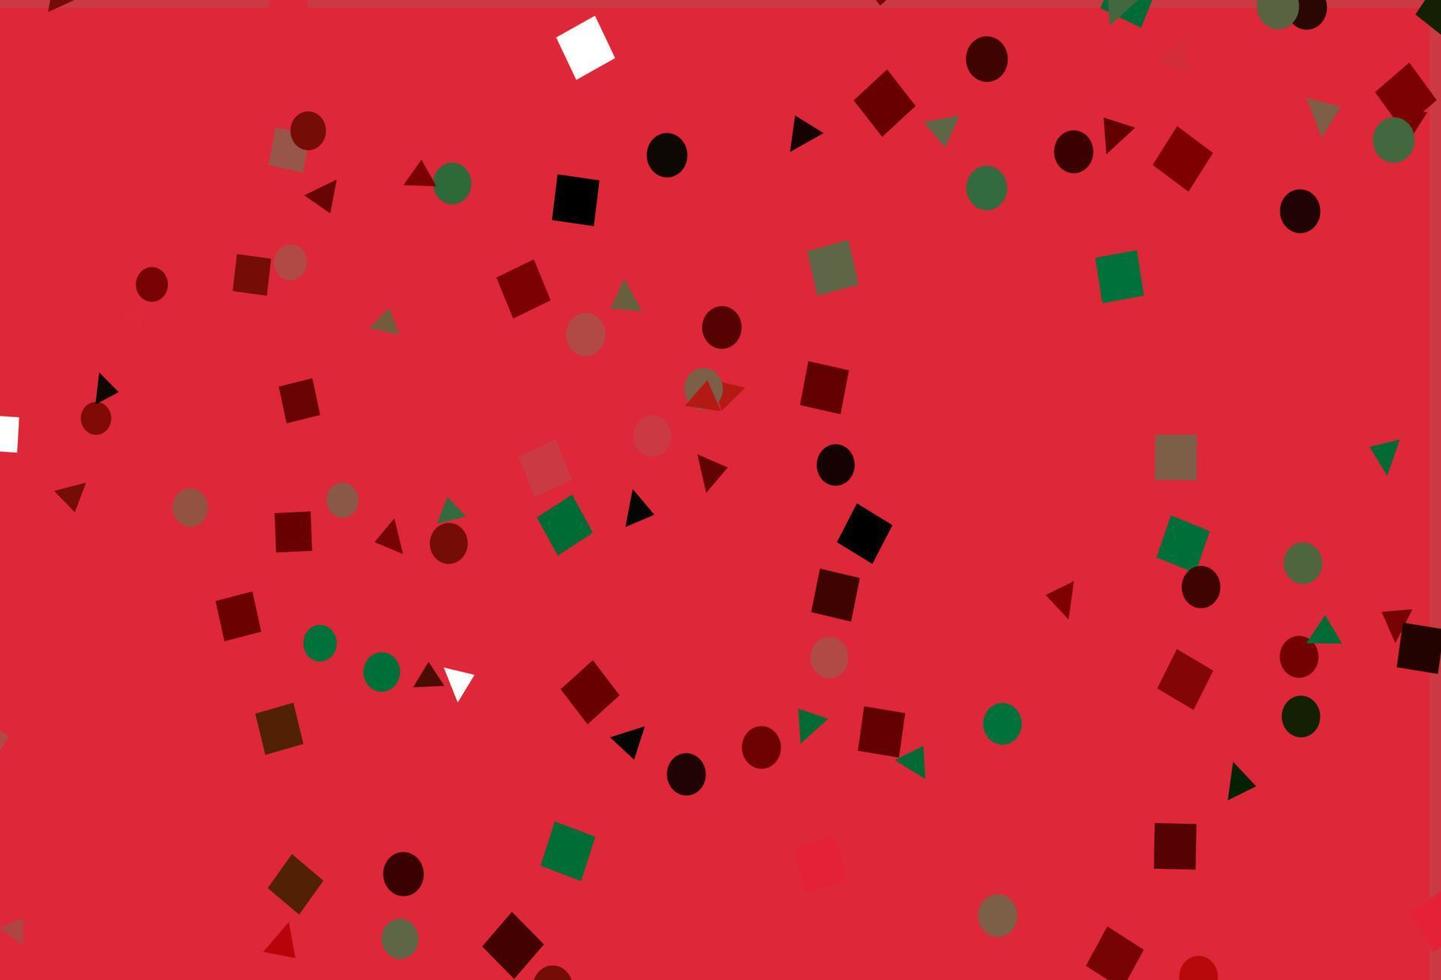 fond de vecteur vert clair et rouge avec des triangles, des cercles, des cubes.